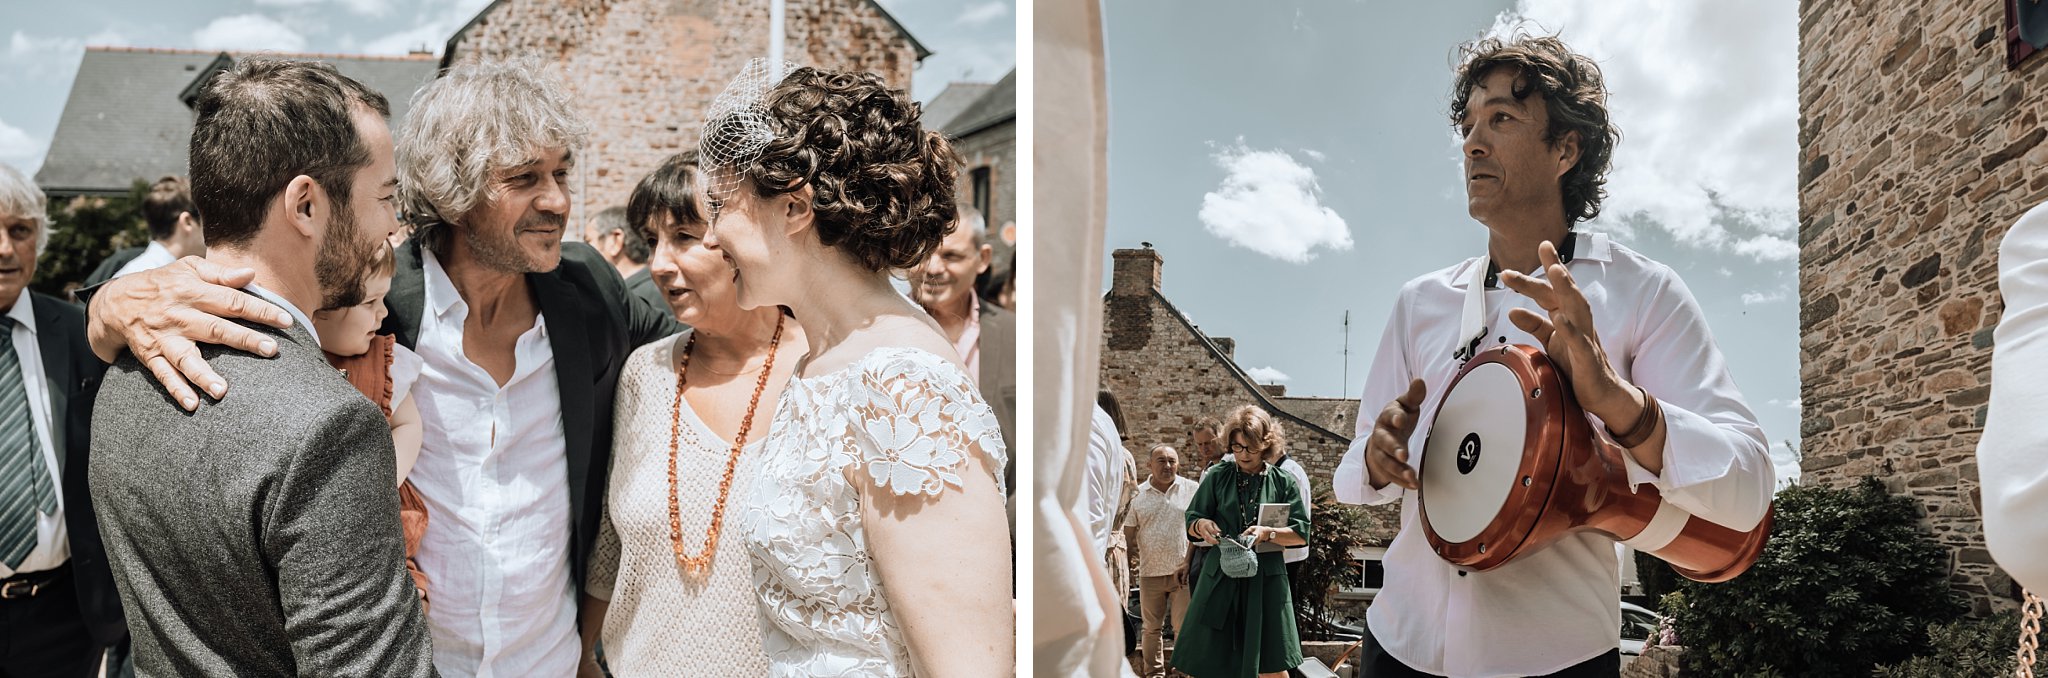 les parents de la mariée la félicite et on vit le musicen jouer de la darbouhka, Un reportage photo mariage en Bretagne sur le thème champêtre et bohème